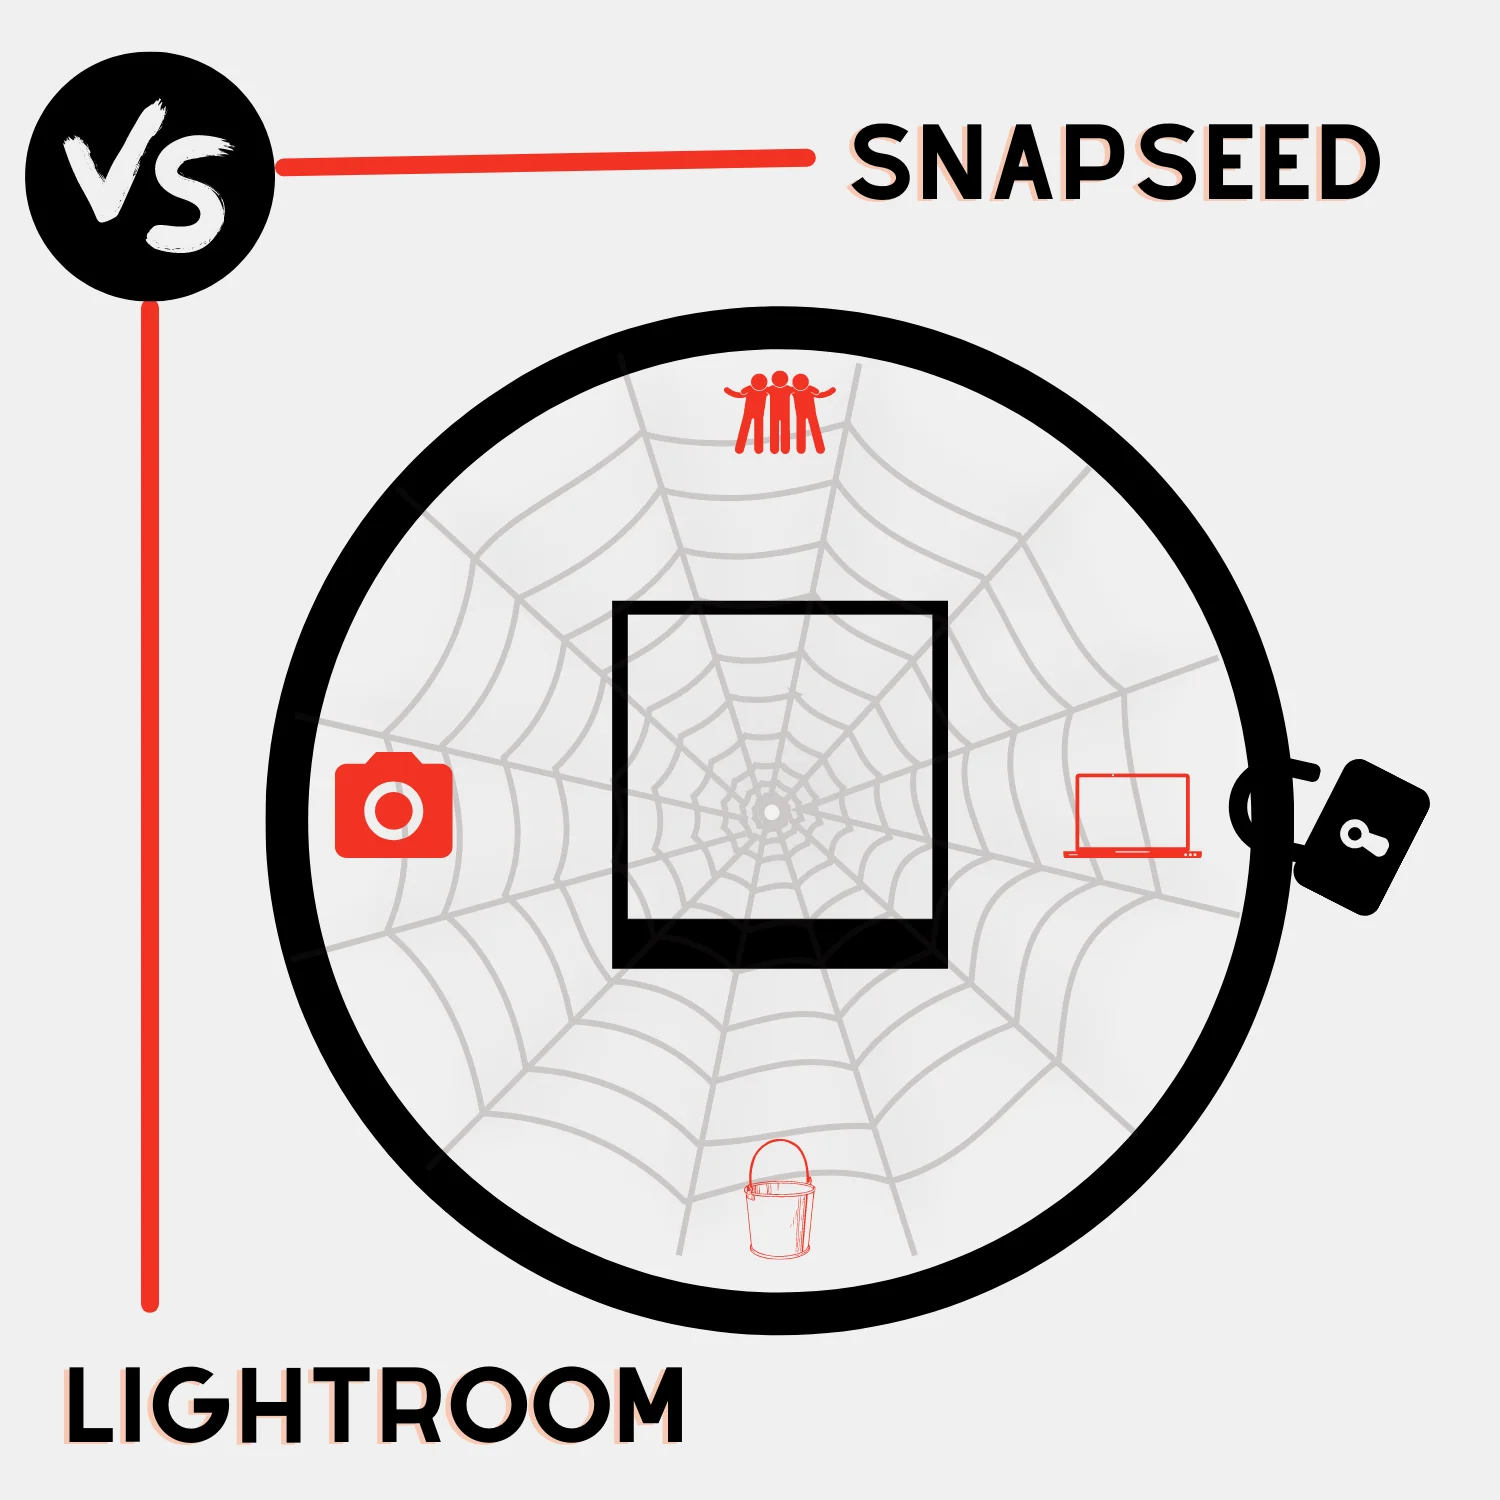 Snapseed vs Lightroom